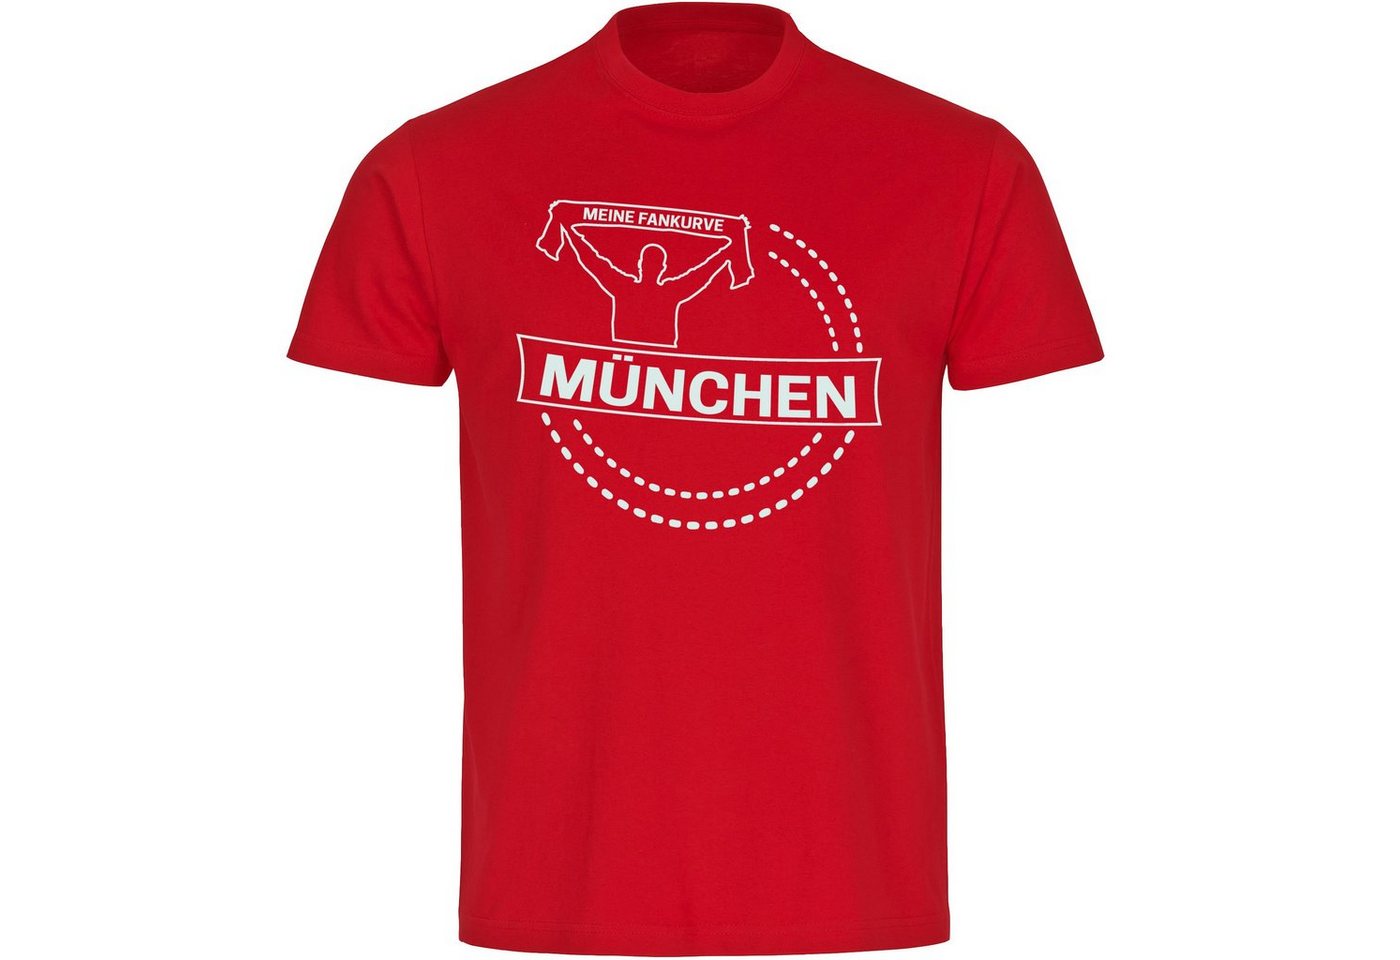 multifanshop T-Shirt Herren München rot - Meine Fankurve - Männer von multifanshop